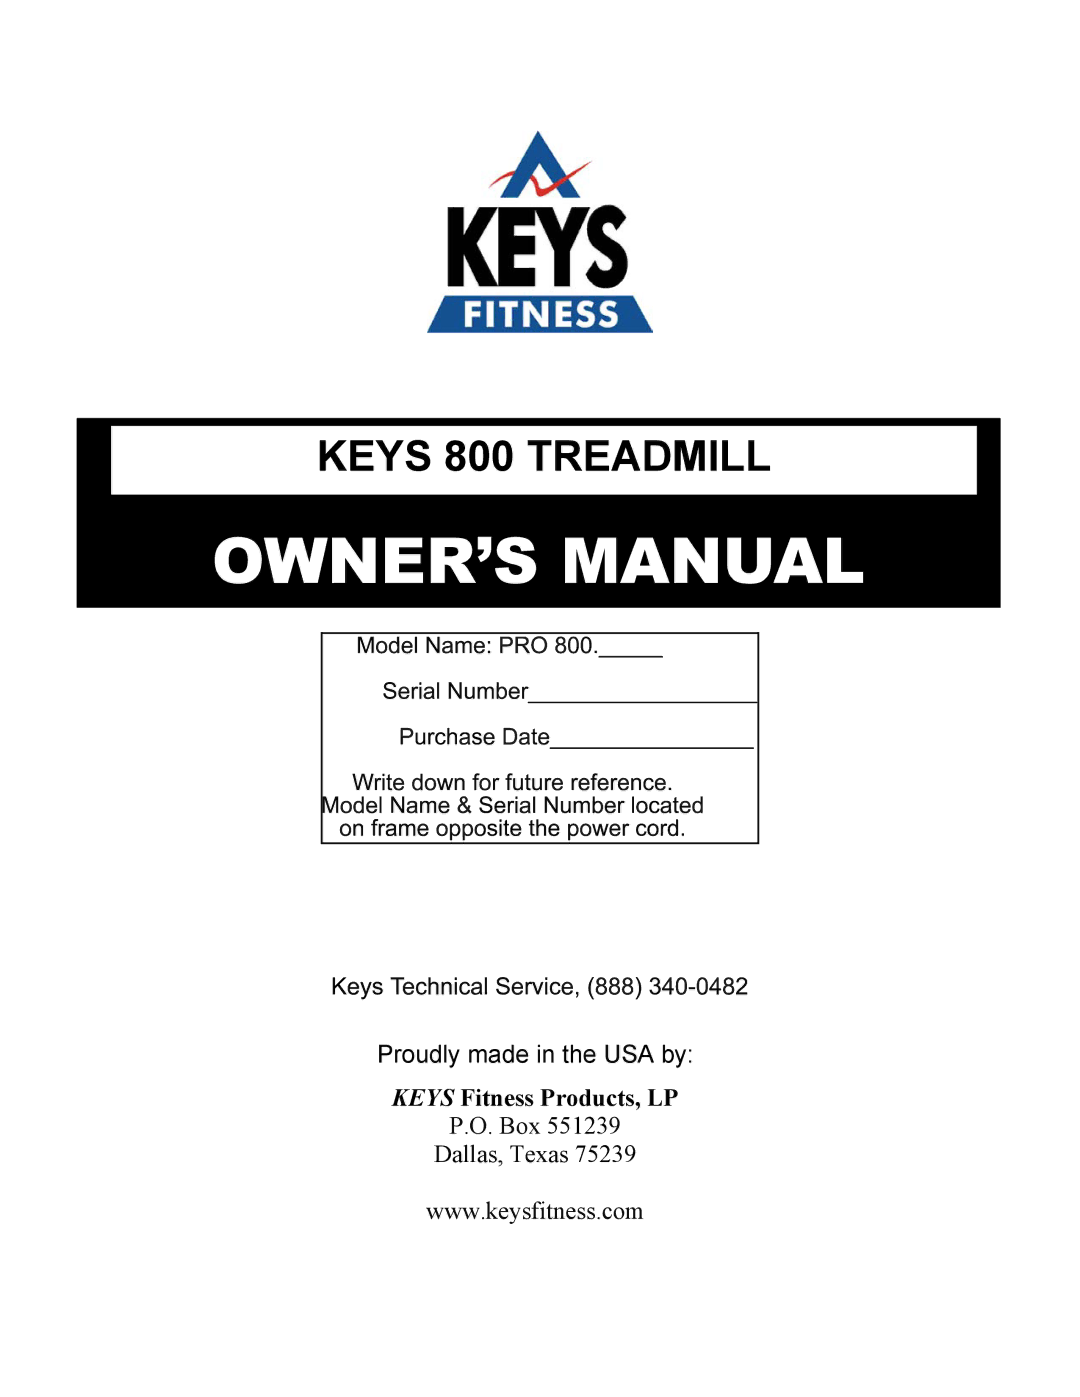 Keys Fitness KEYS800 owner manual Keys 800 Treadmill 